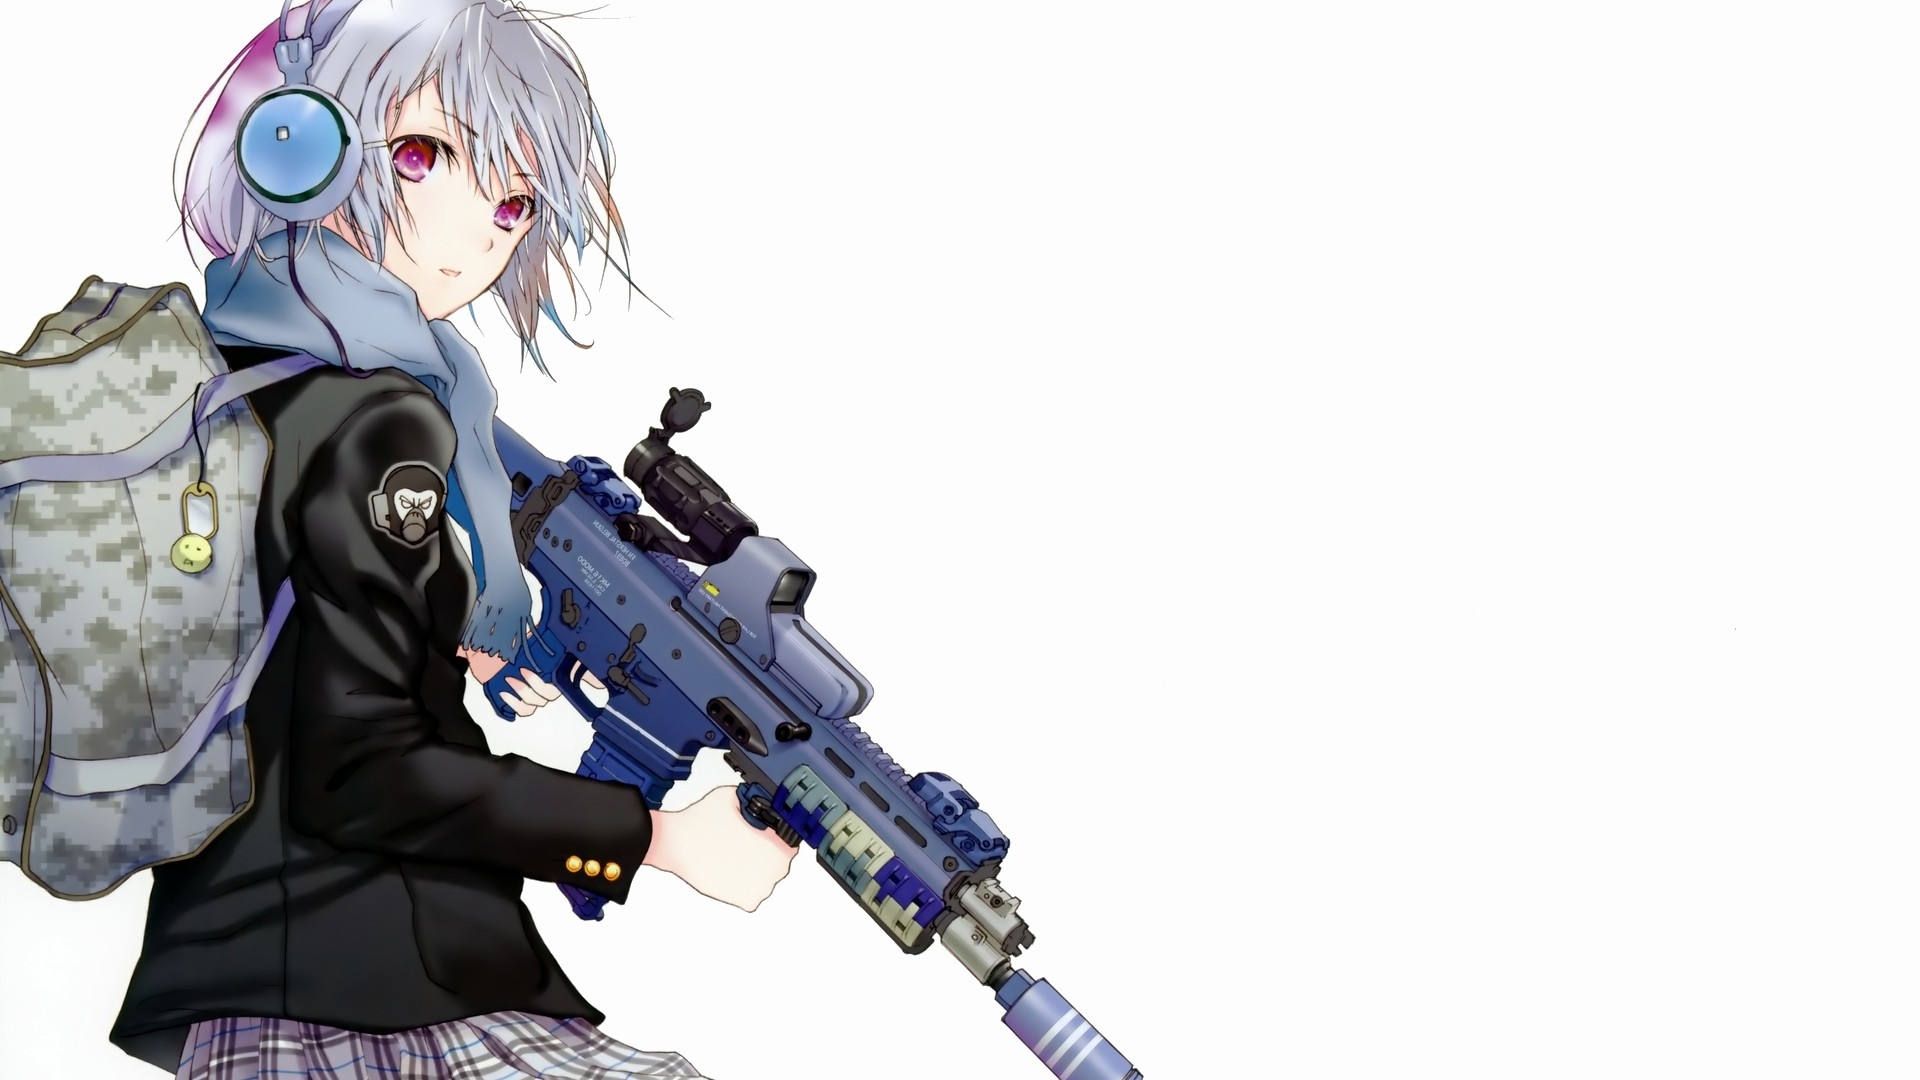 Sniper Anime Girl Wallpaper